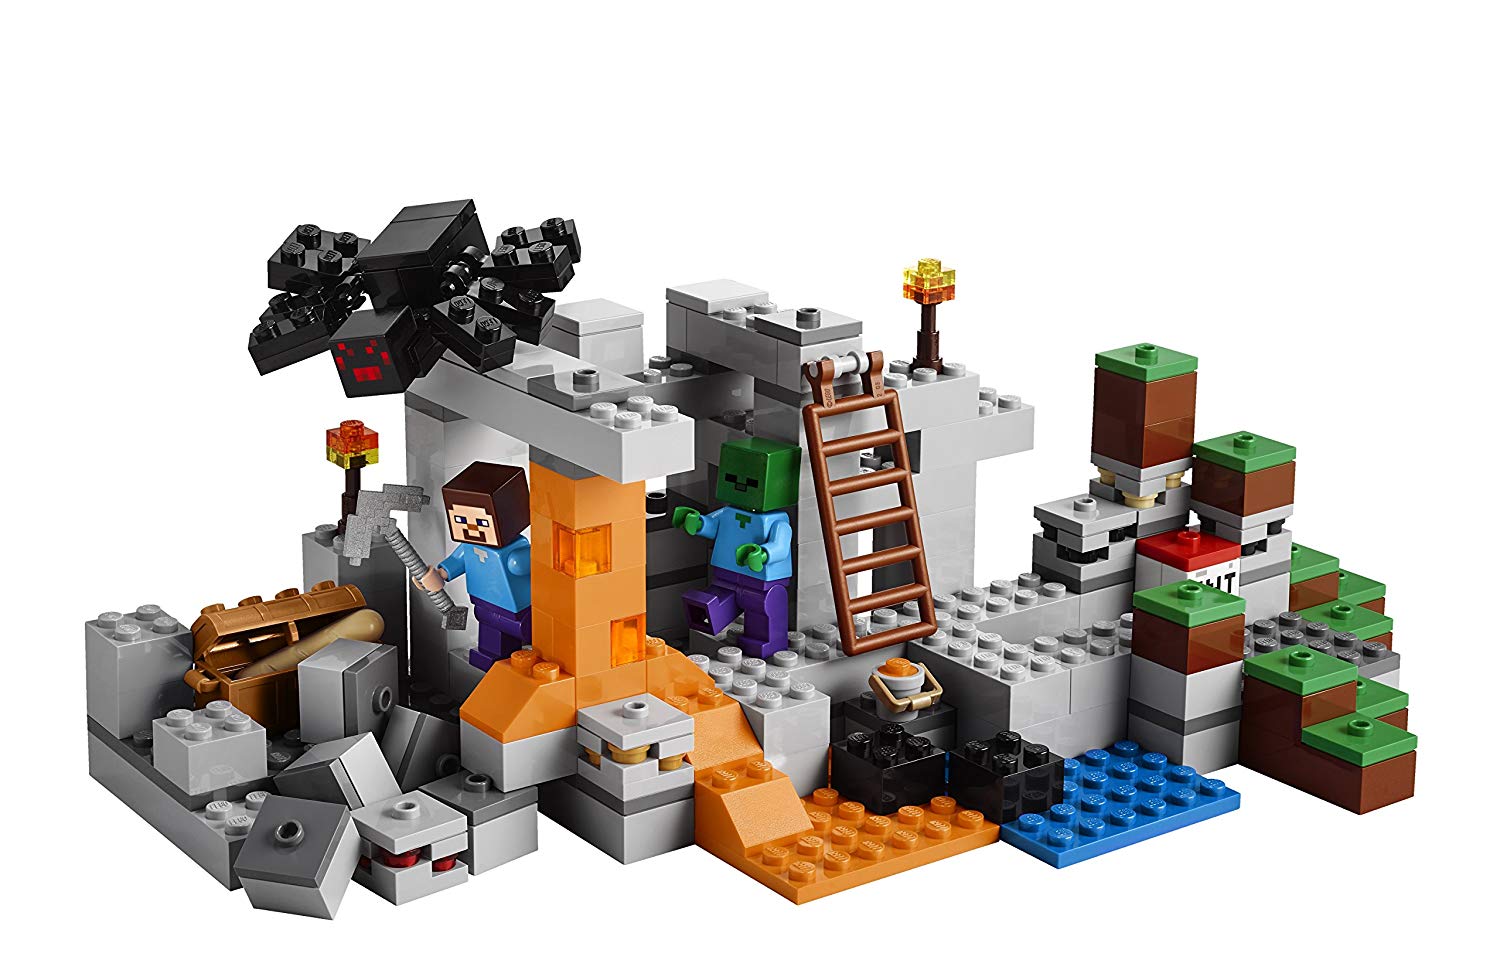 Đồ chơi xếp hình Lego Minecraft 21113 – The Cave